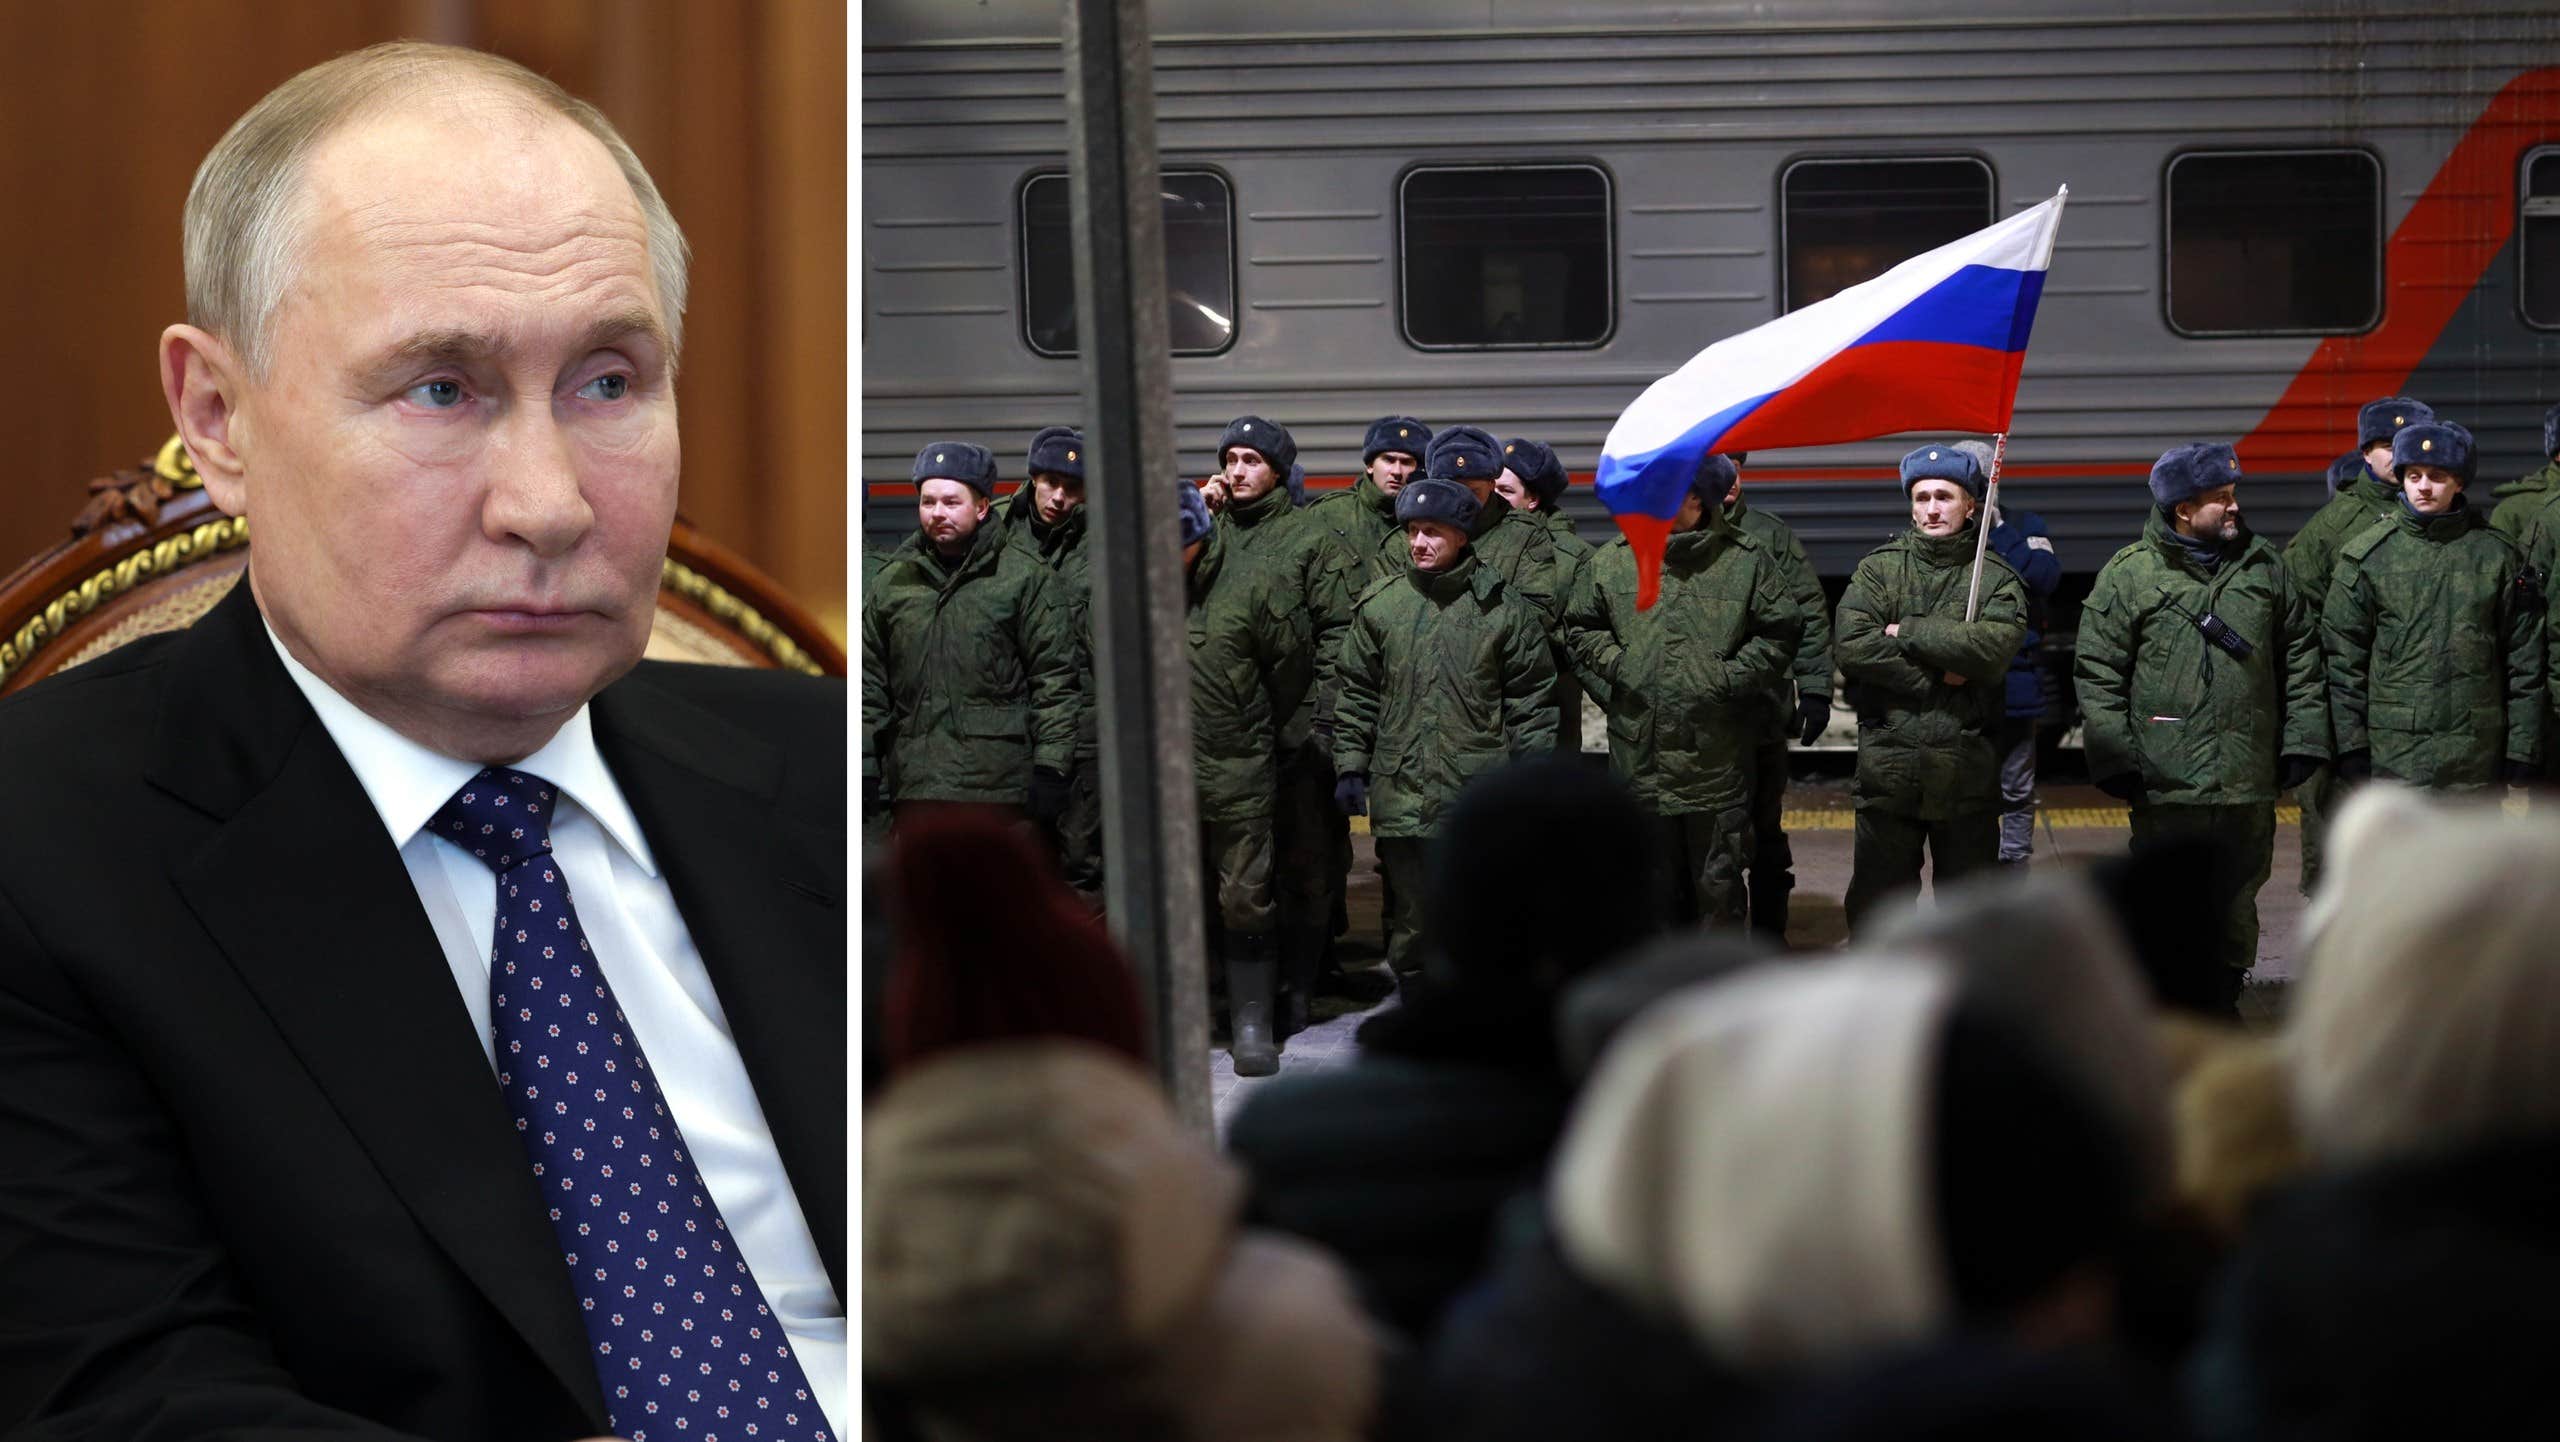 La nuova mossa di Putin: attirare più soldati |  il mondo